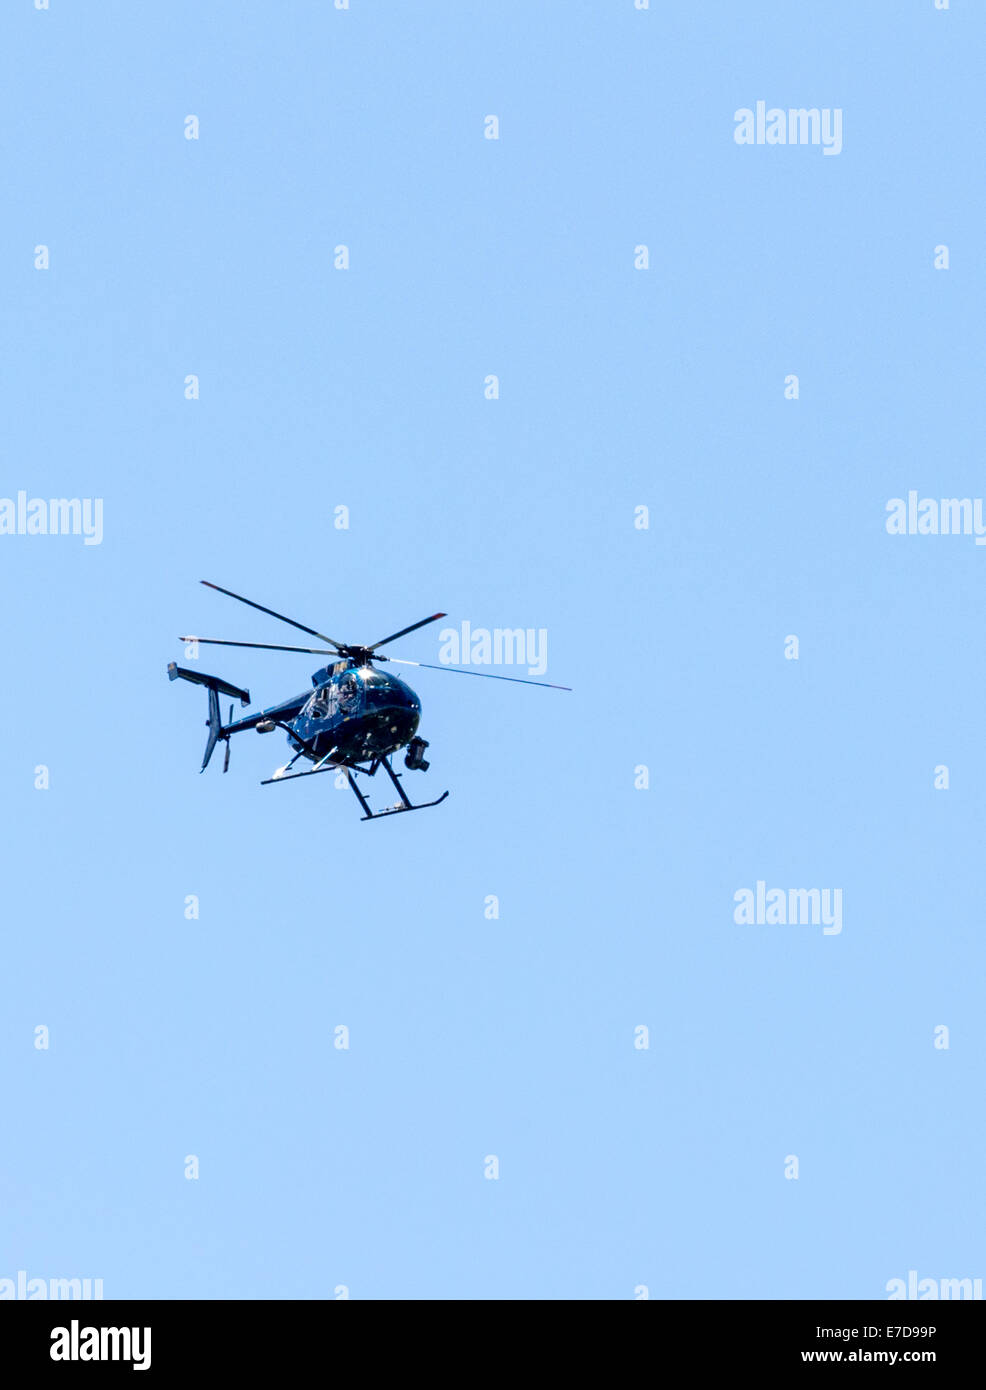 Medios grabando el helicóptero USA Pro Challenge Bike carrera, la etapa 3, en el centro de Colorado, EE.UU. Foto de stock